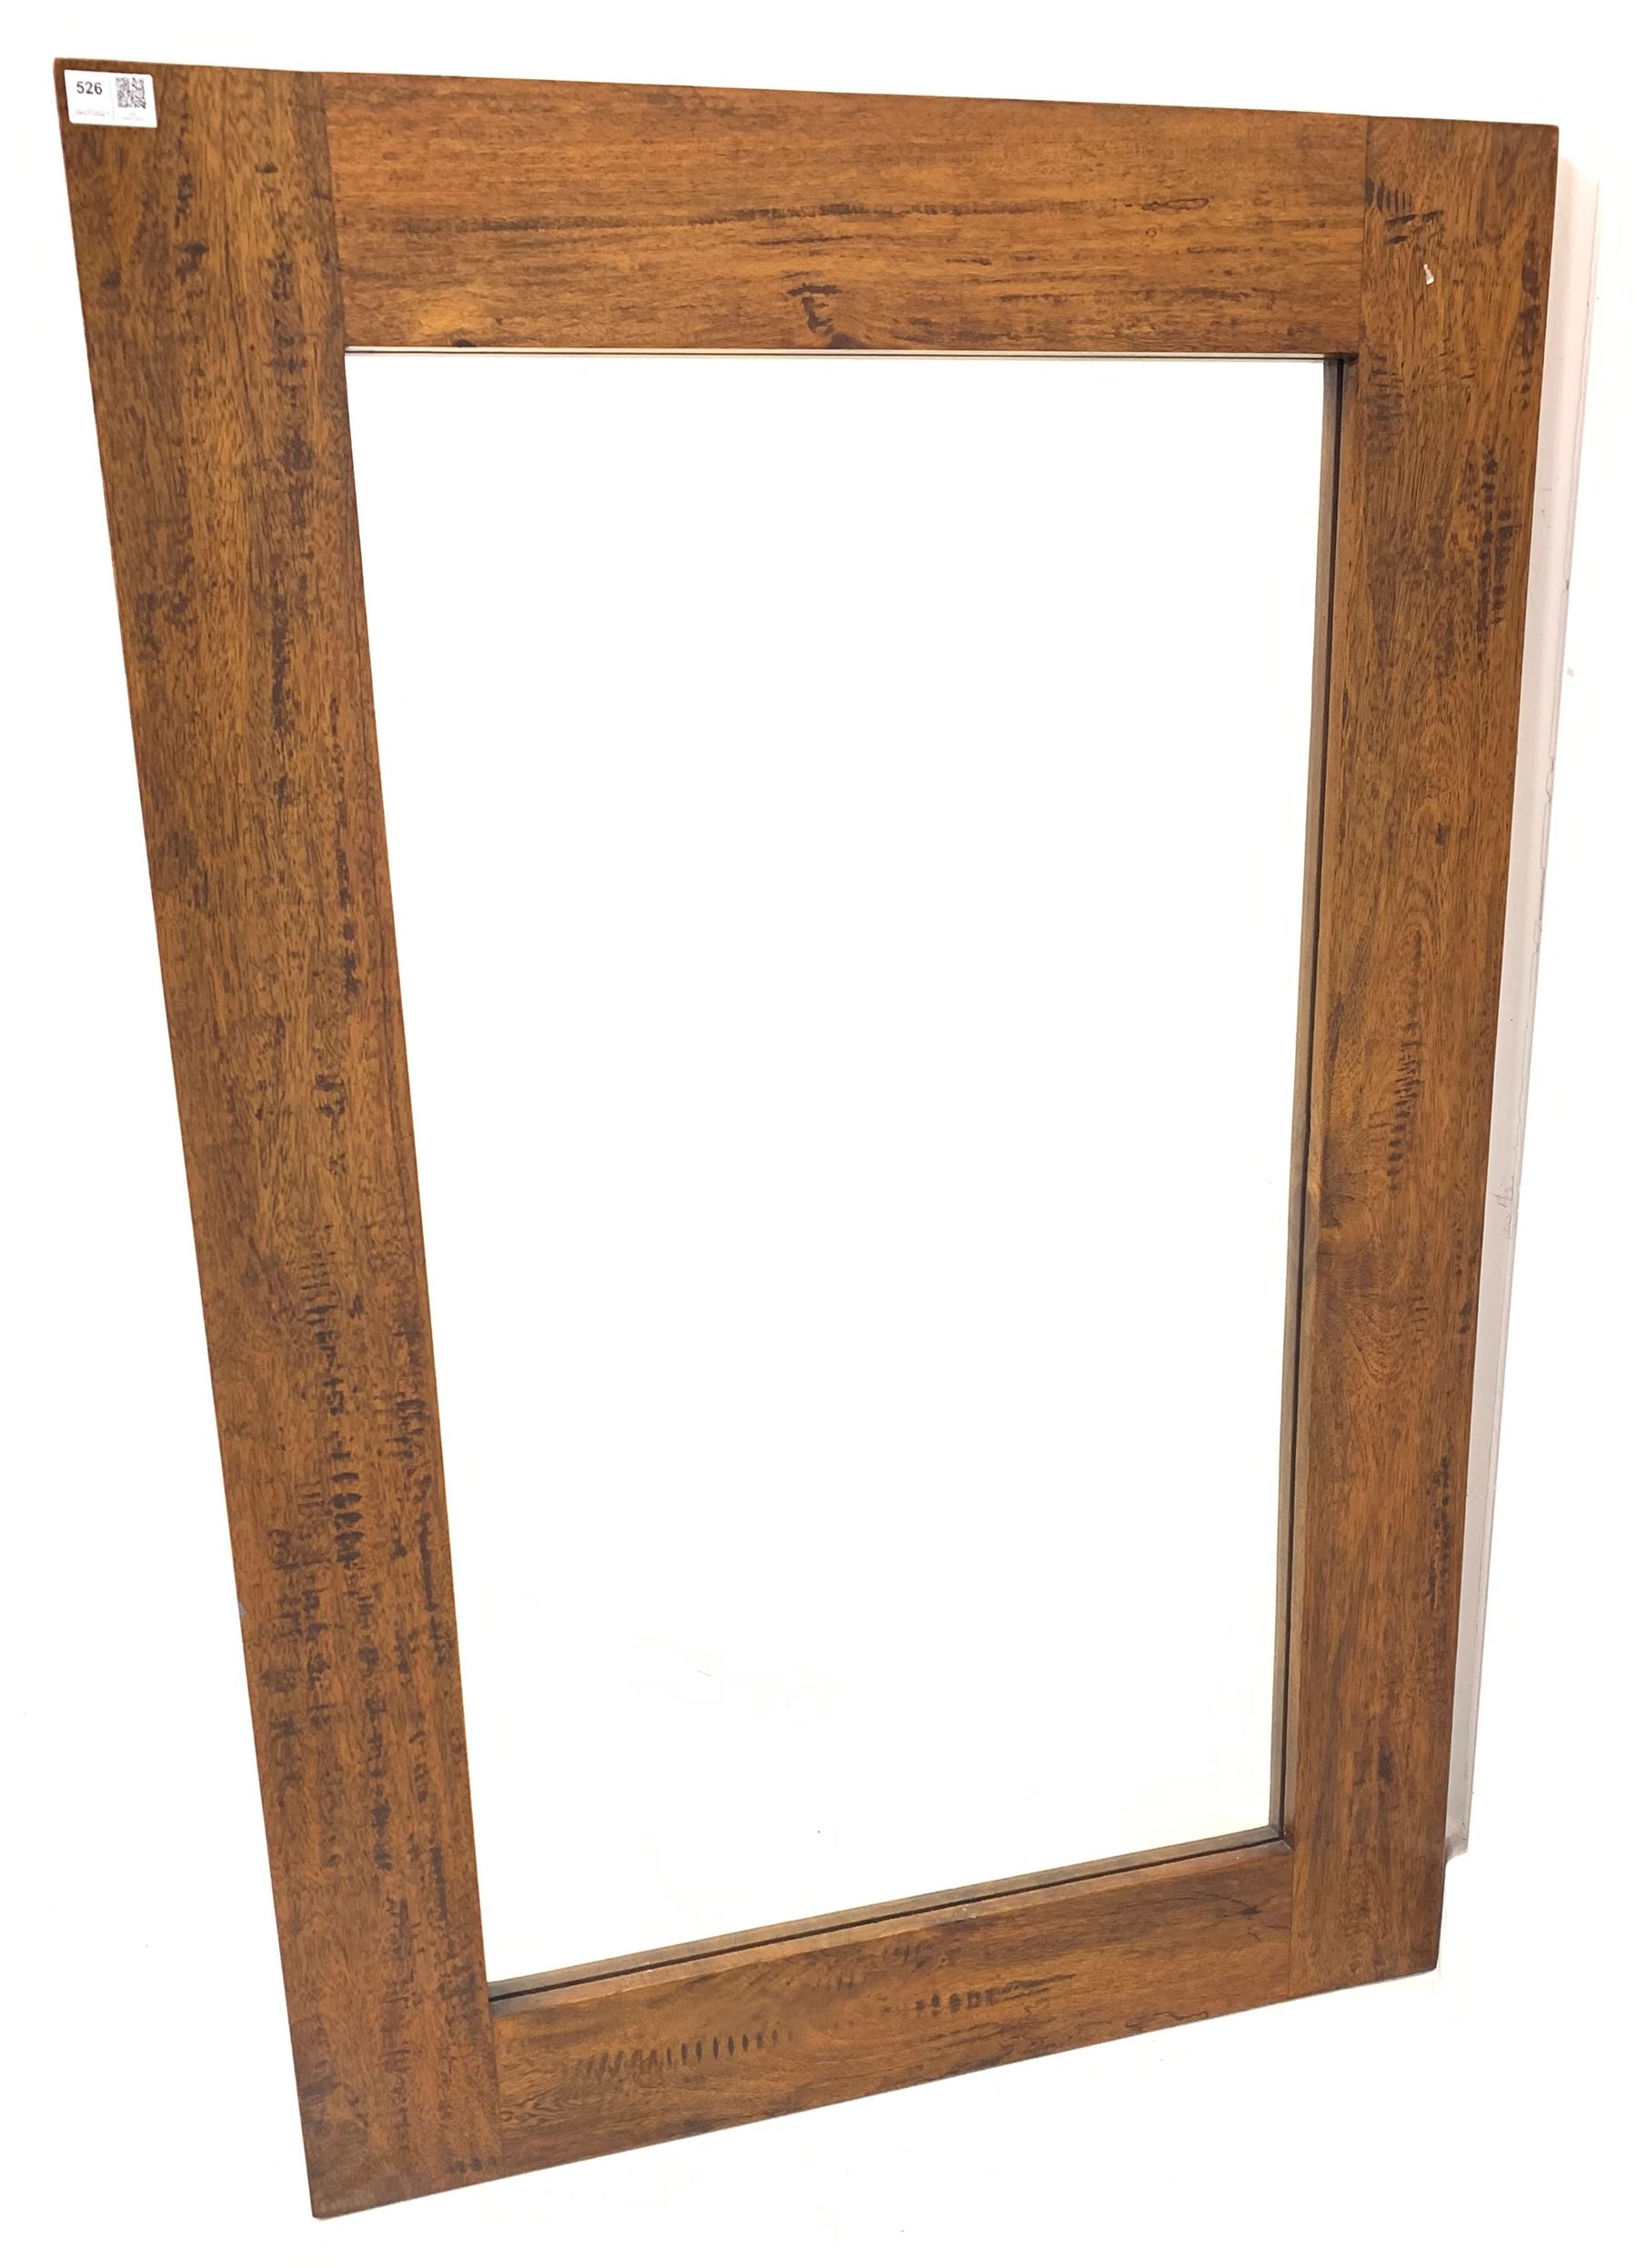 Barker & Stonehouse Santa Fe rectangular wall mirror in hardwood frame 80cm x 121cm